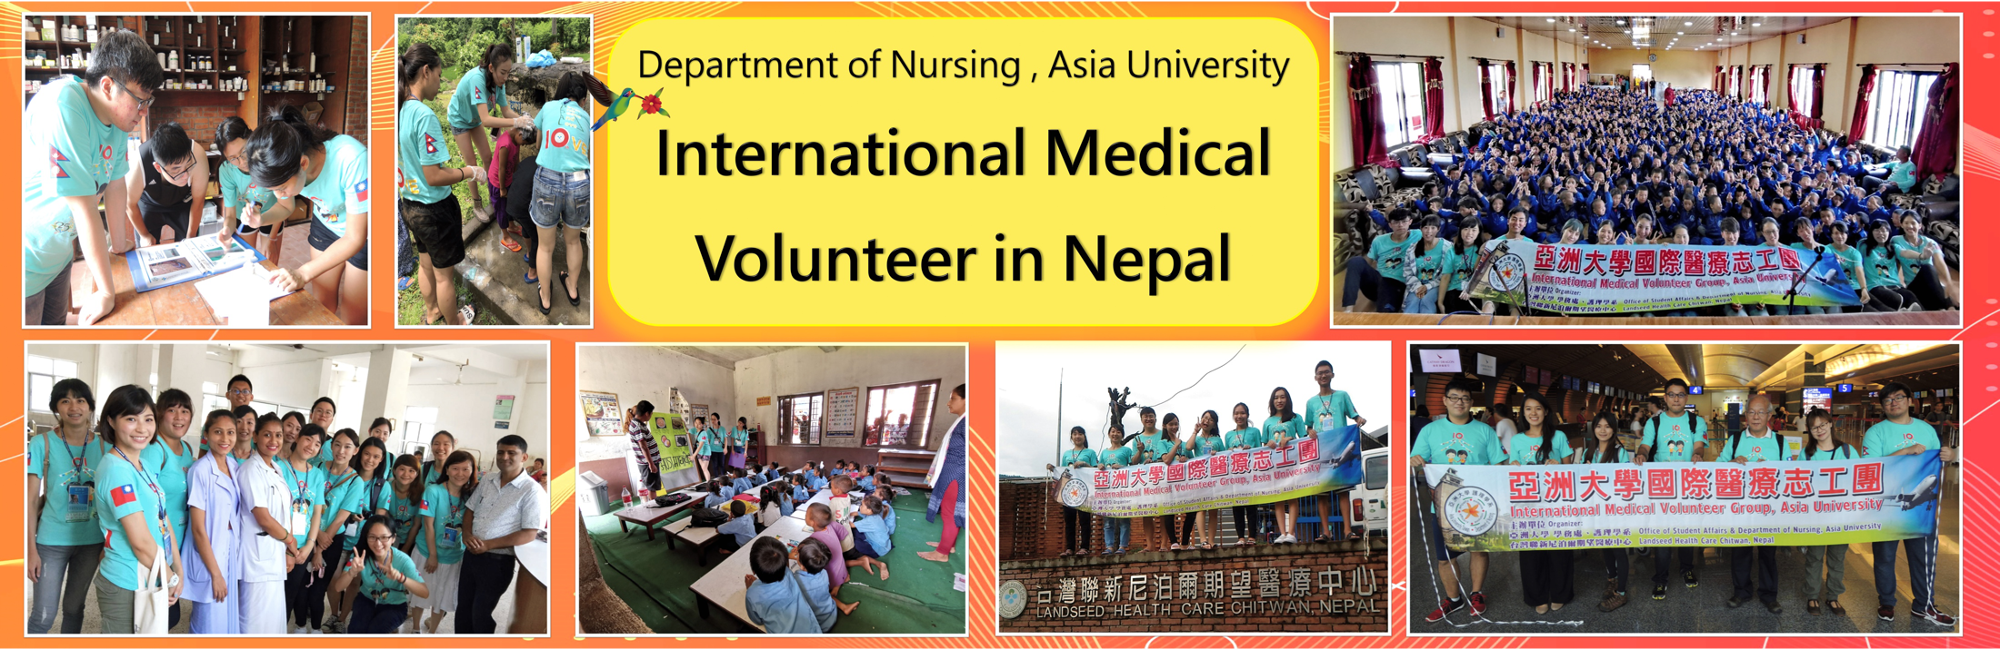 International Medical Volunteer in Nepal